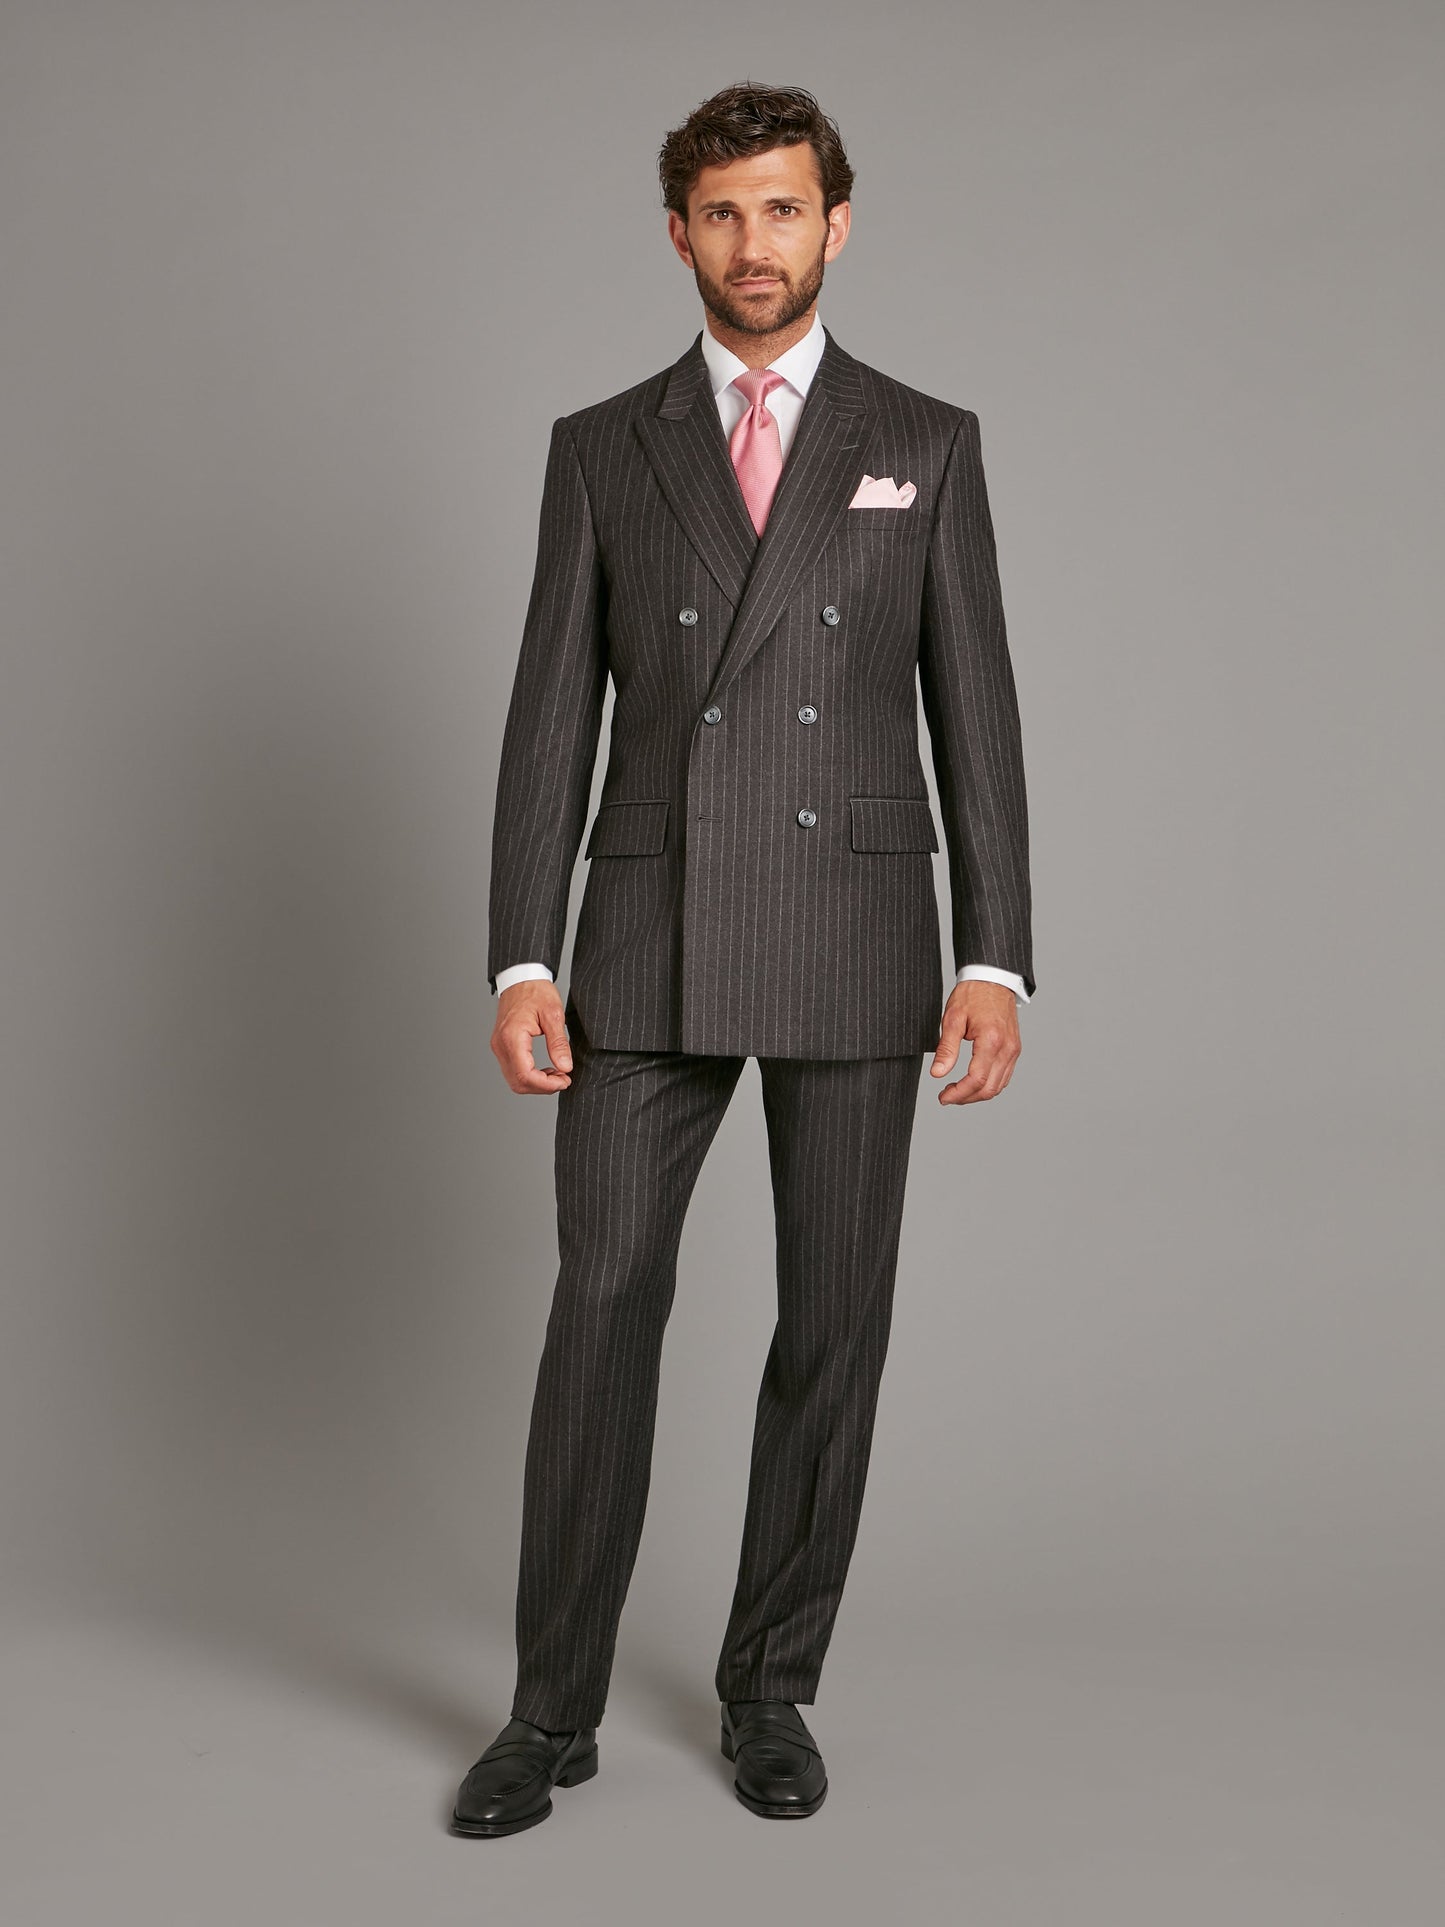 cadogan suit flannel chalk stripe charcoal 1